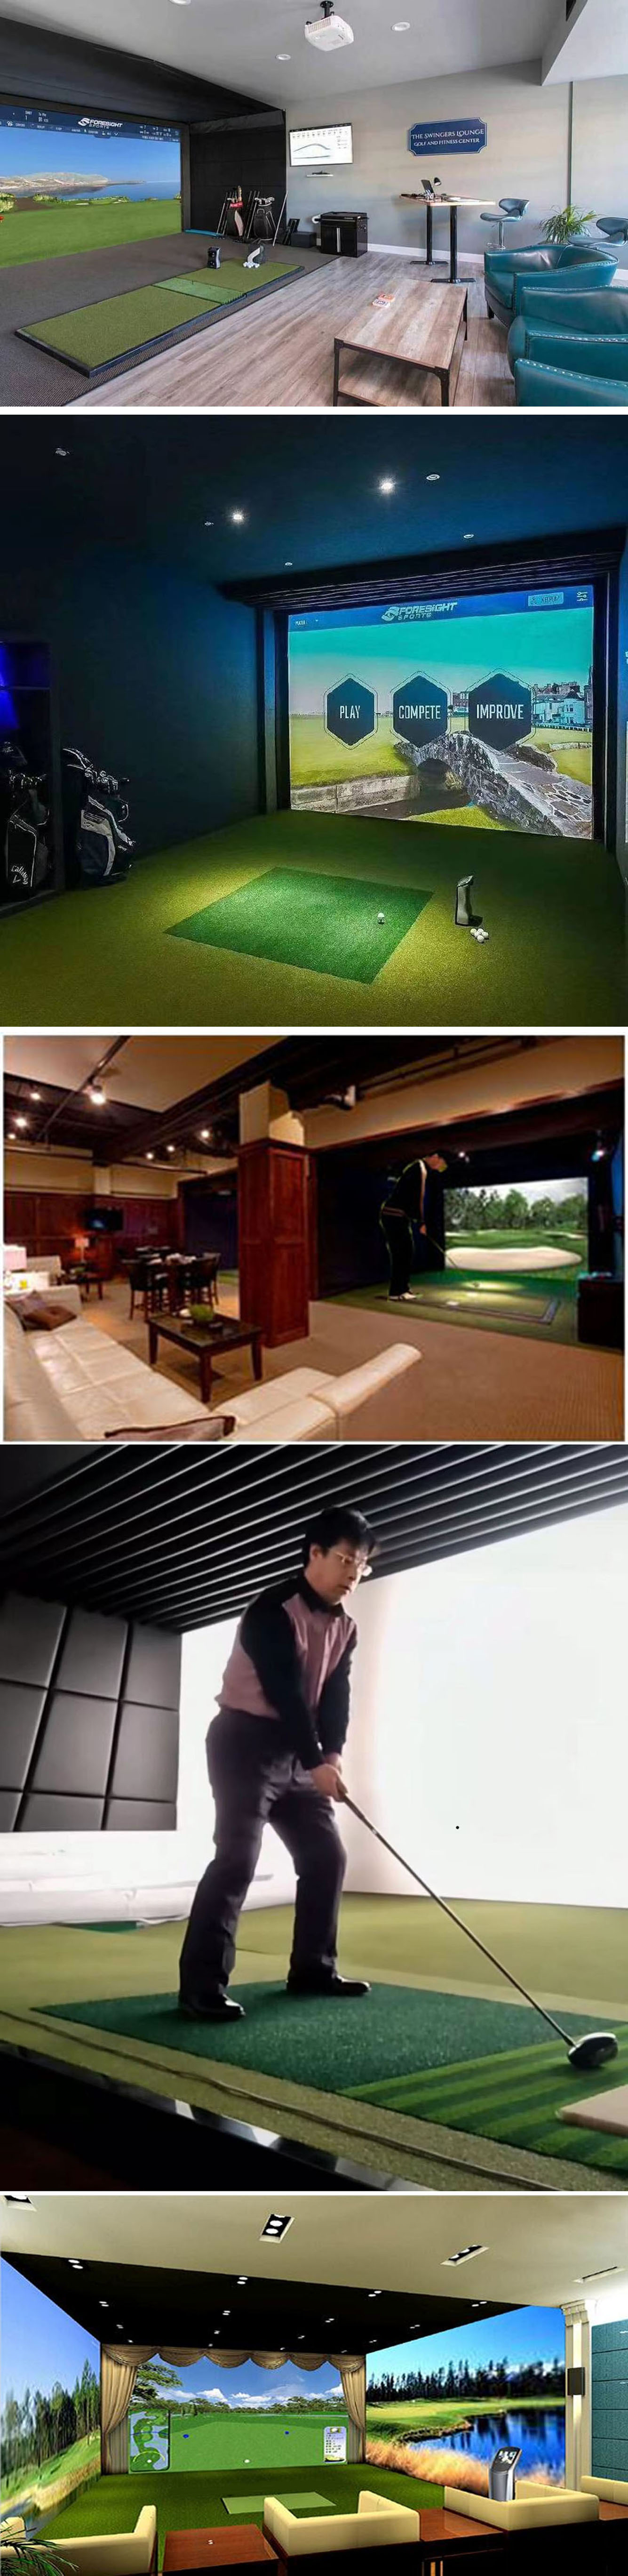 室内高尔夫设备技术 01.jpg